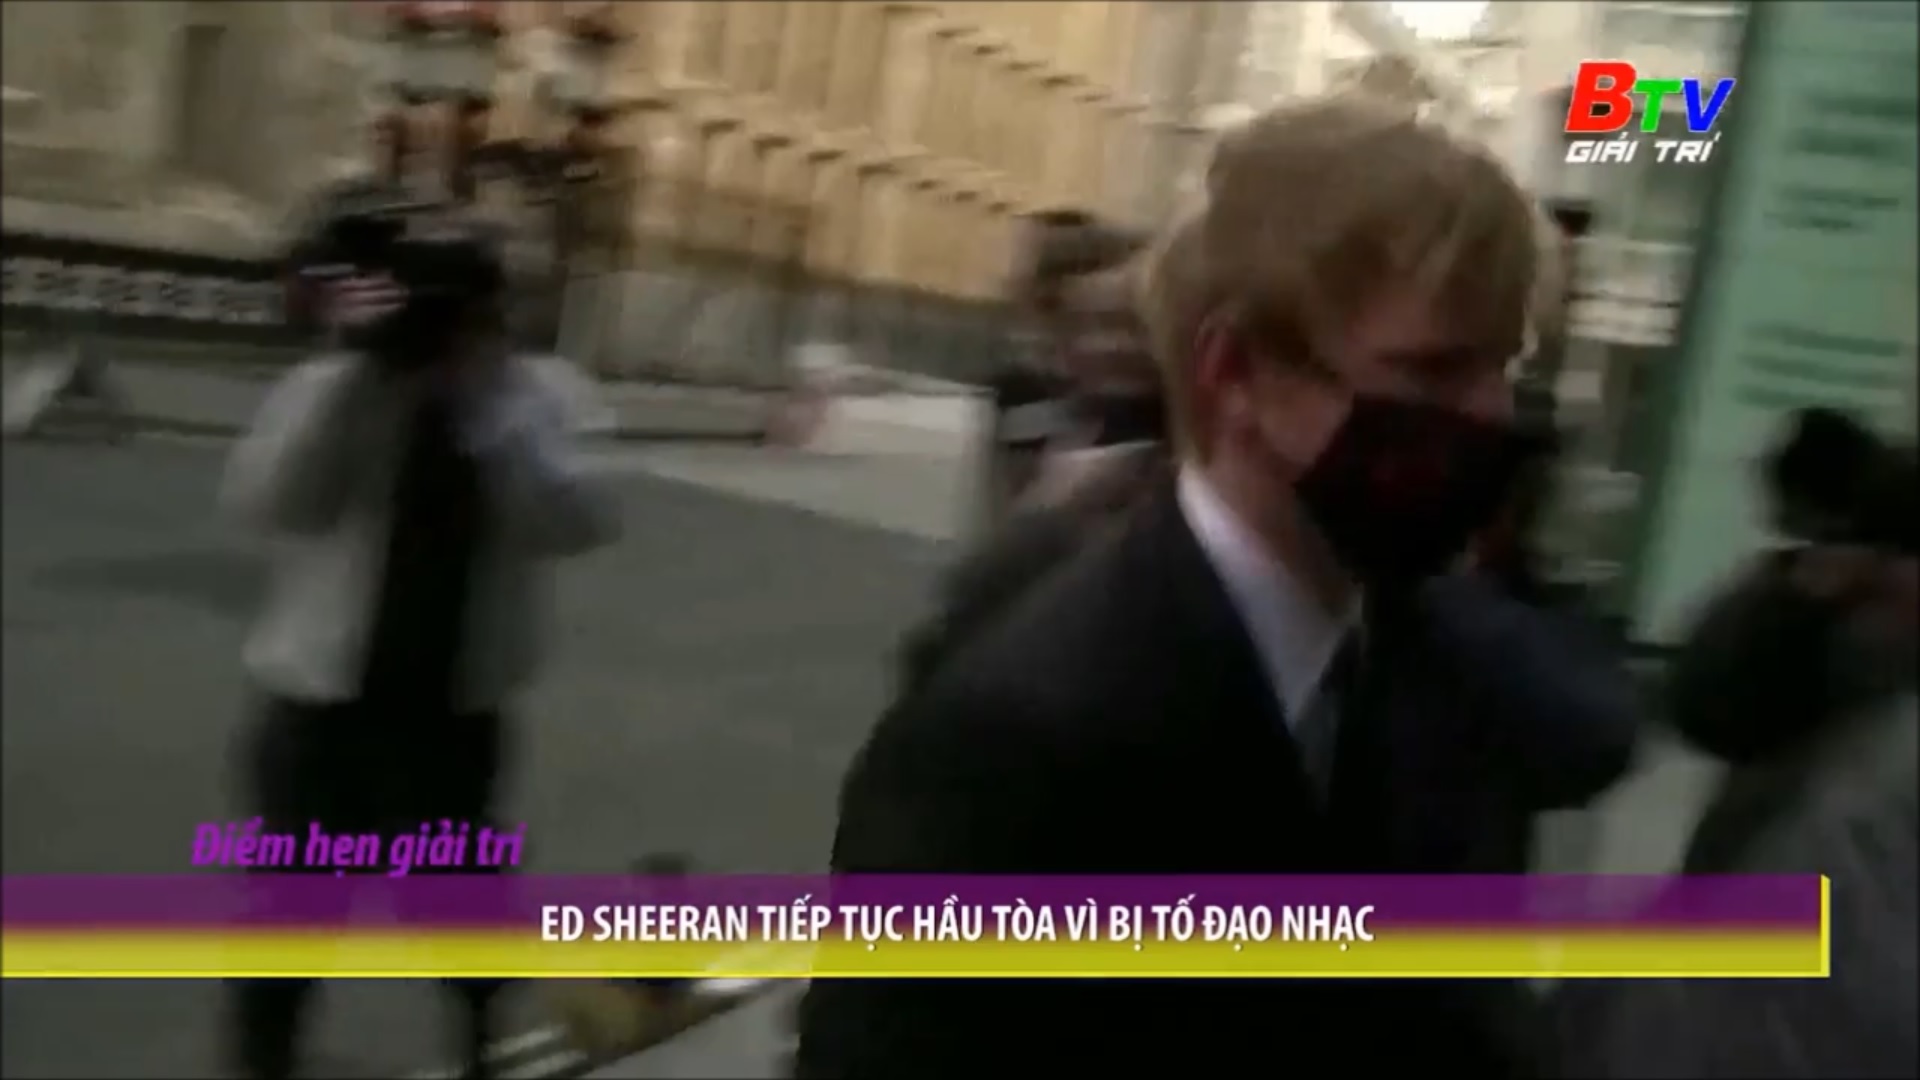 Ed Sheeran tiếp tục hầu tòa vì bị tố đạo nhạc 